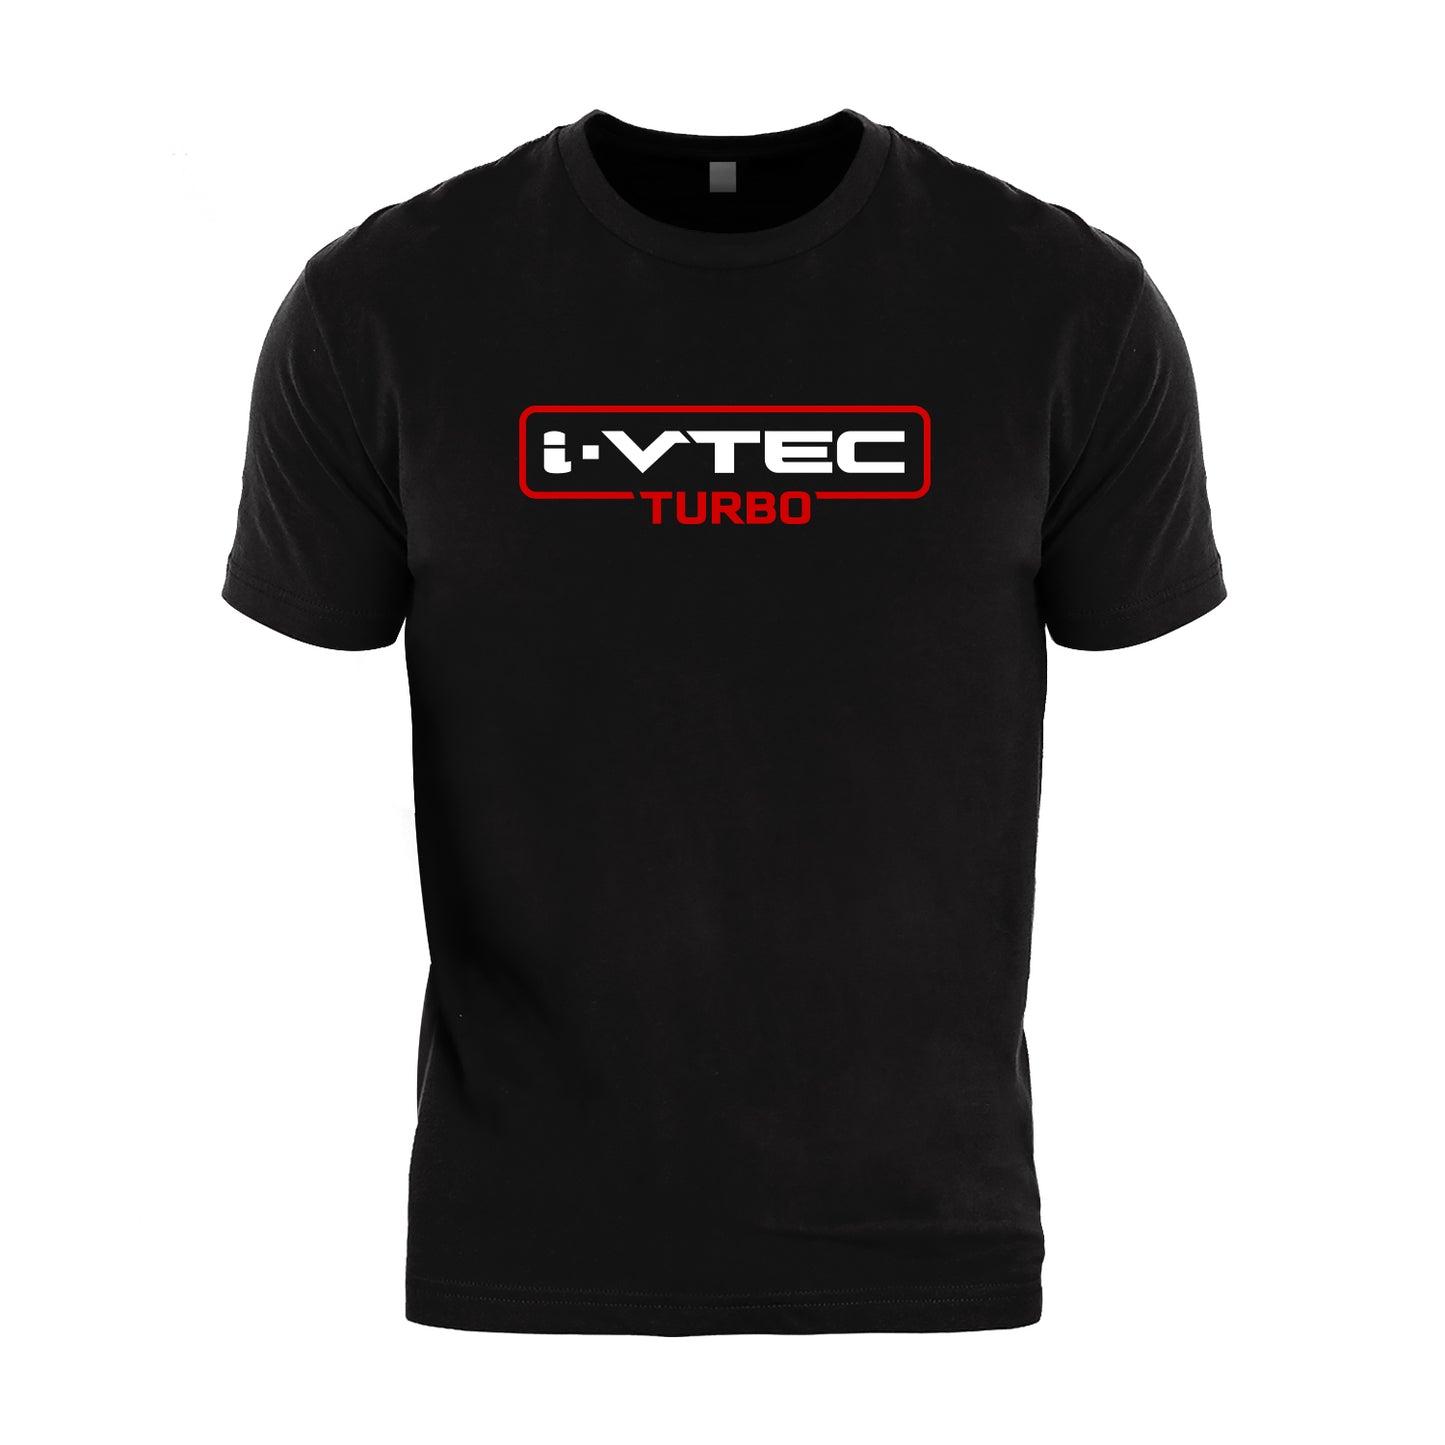 I-Vtec Turbo T-Shirt